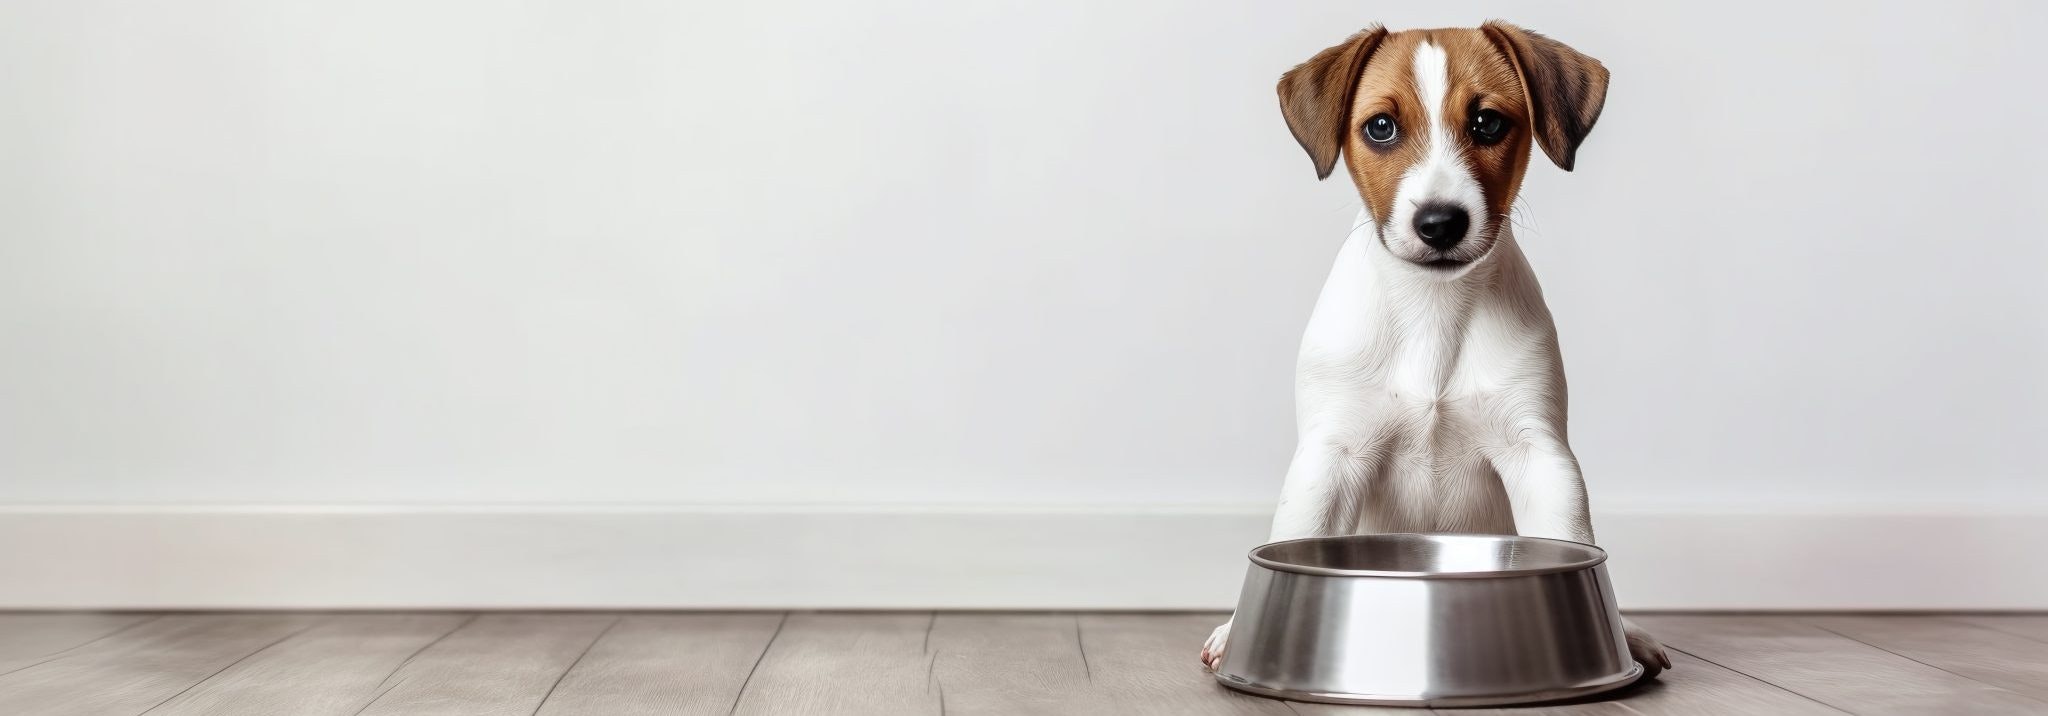 A dog sitting behind a silver food bowl